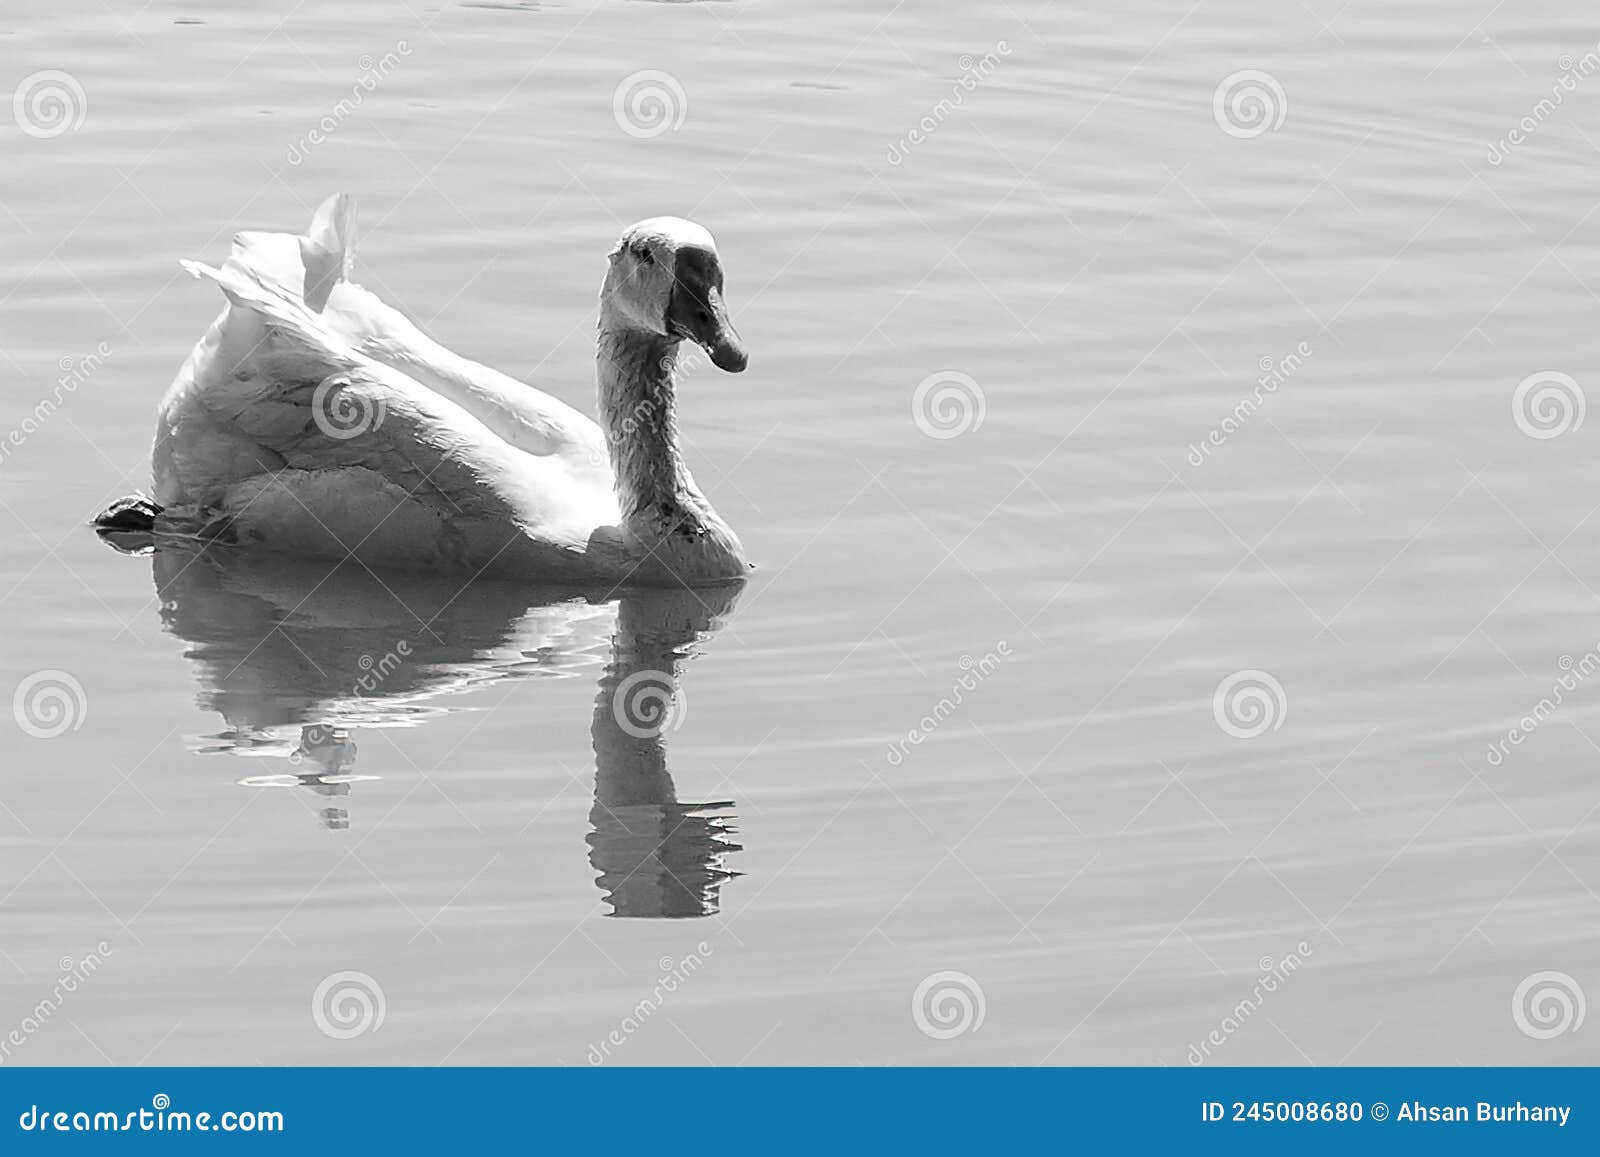 peacefull swan